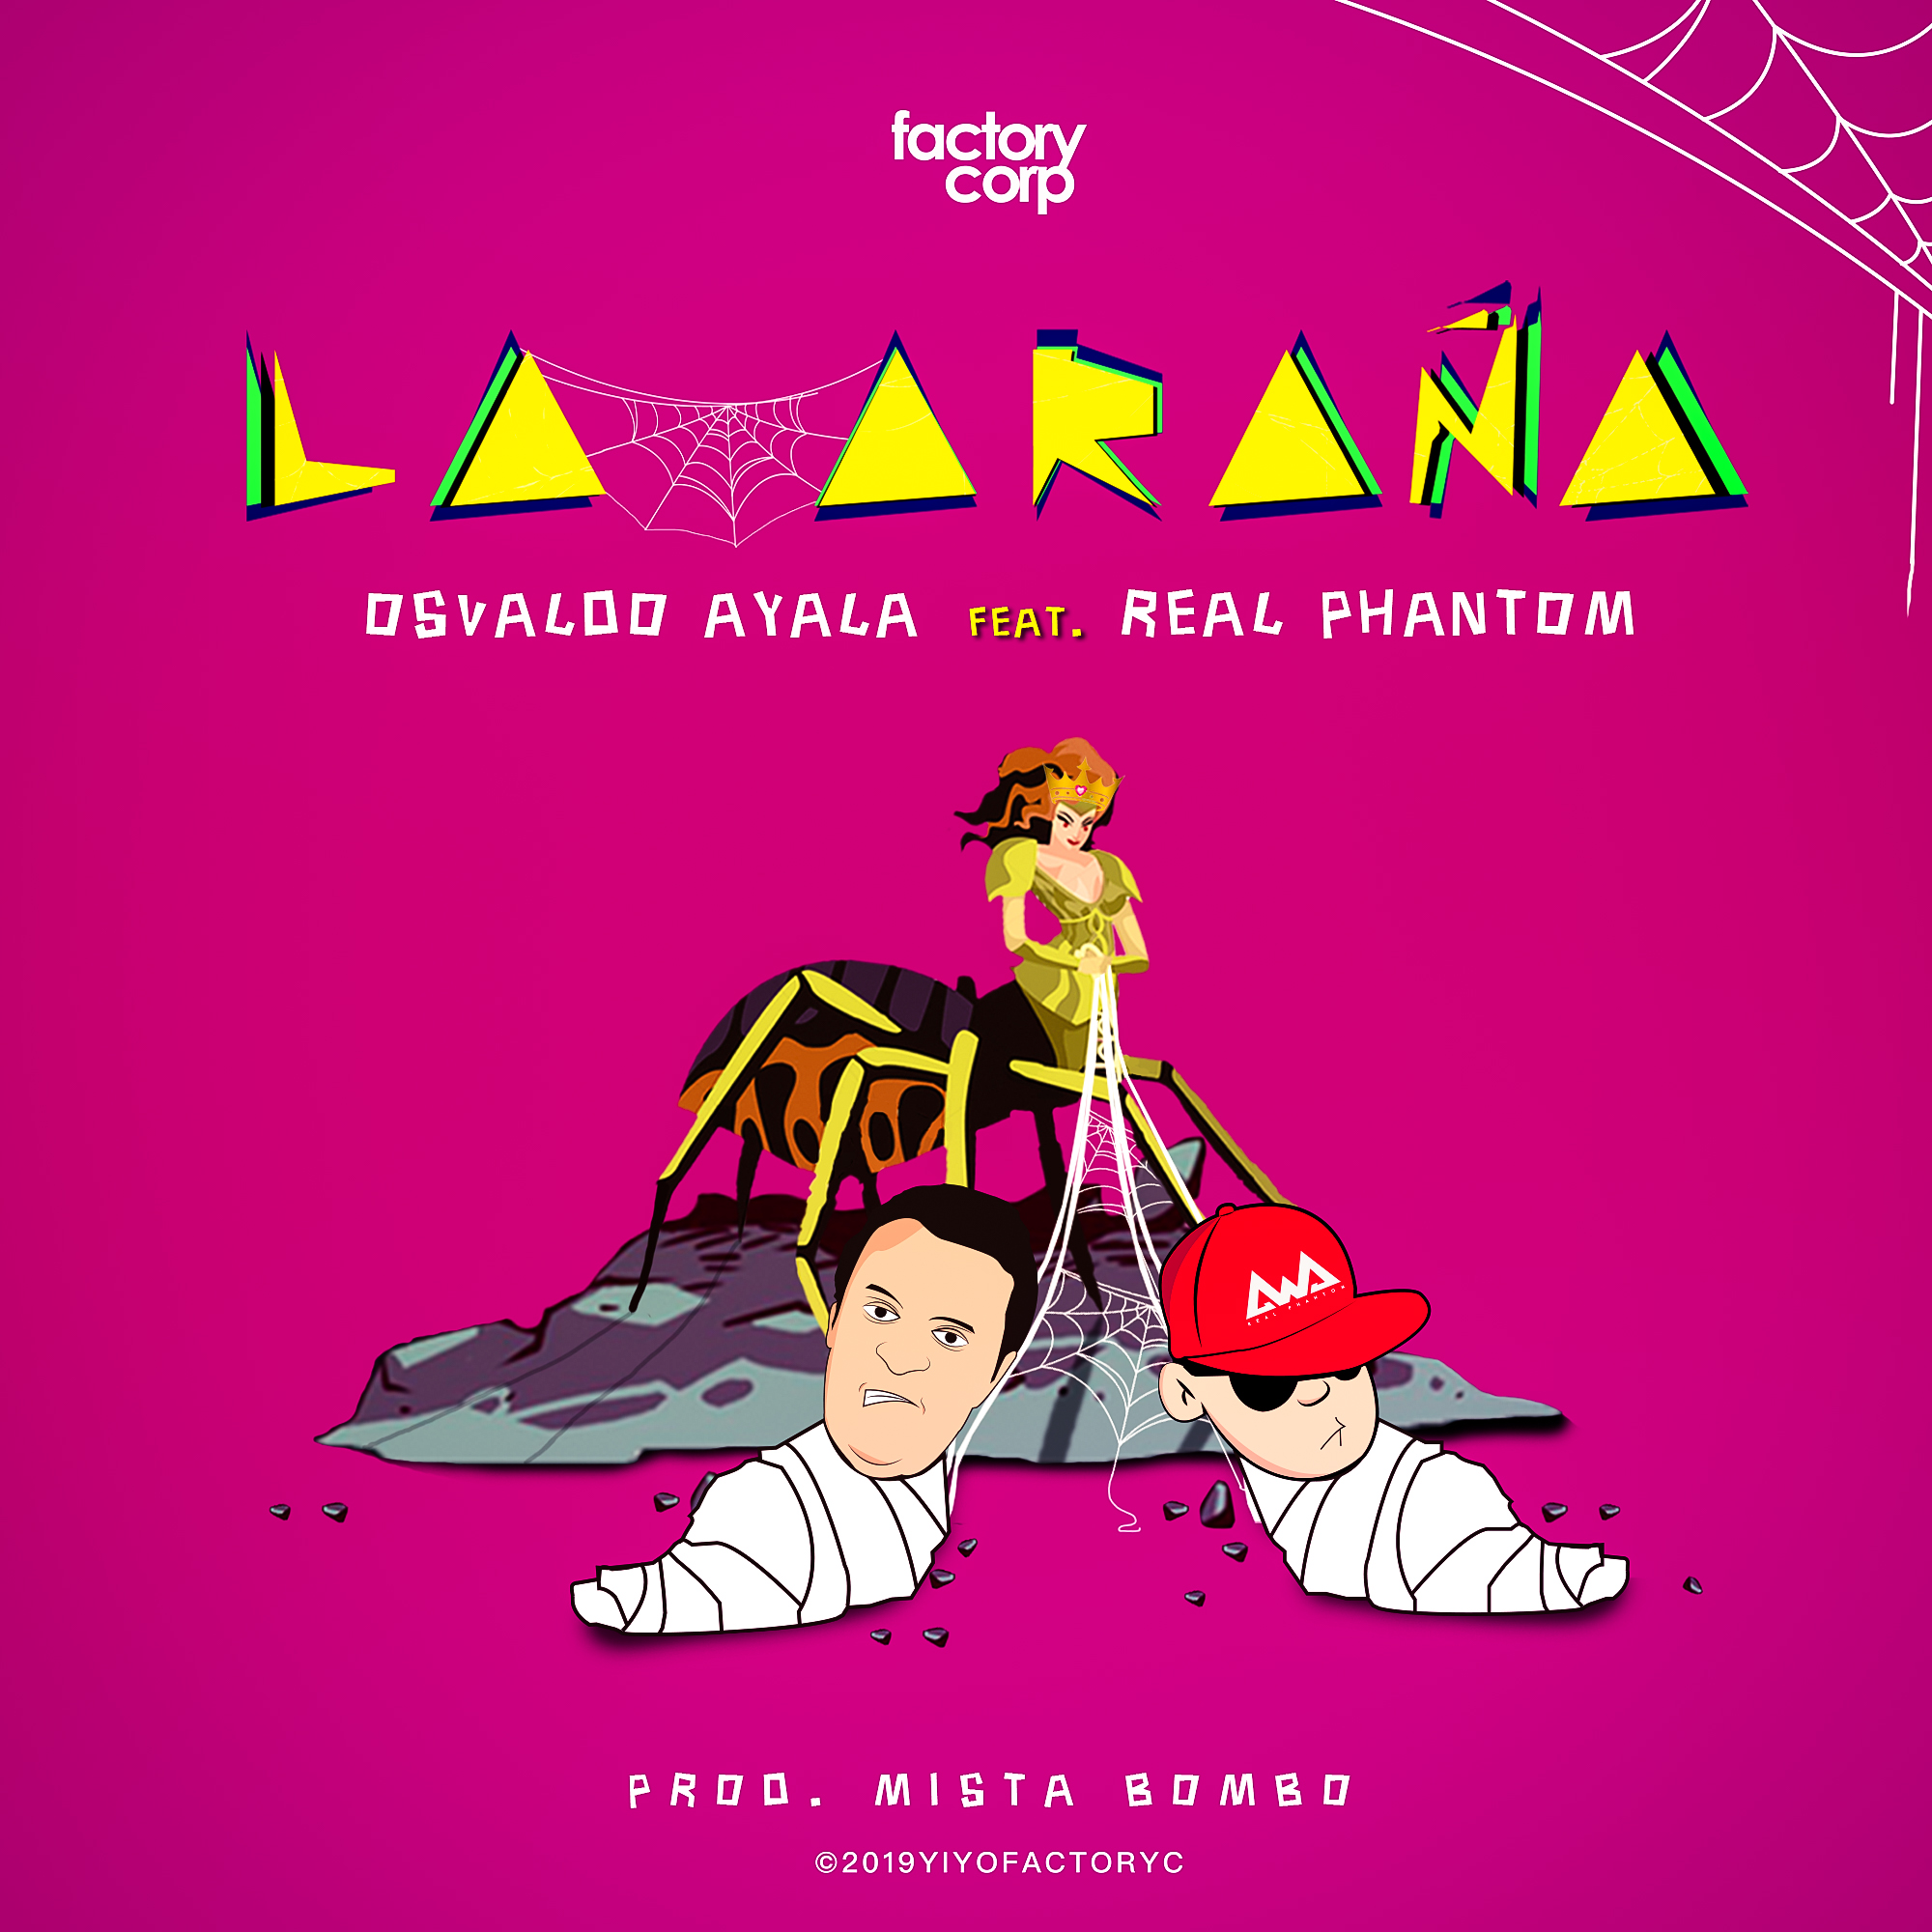 Osvaldo Ayala Feat. Real Phantom - La arana.mp3